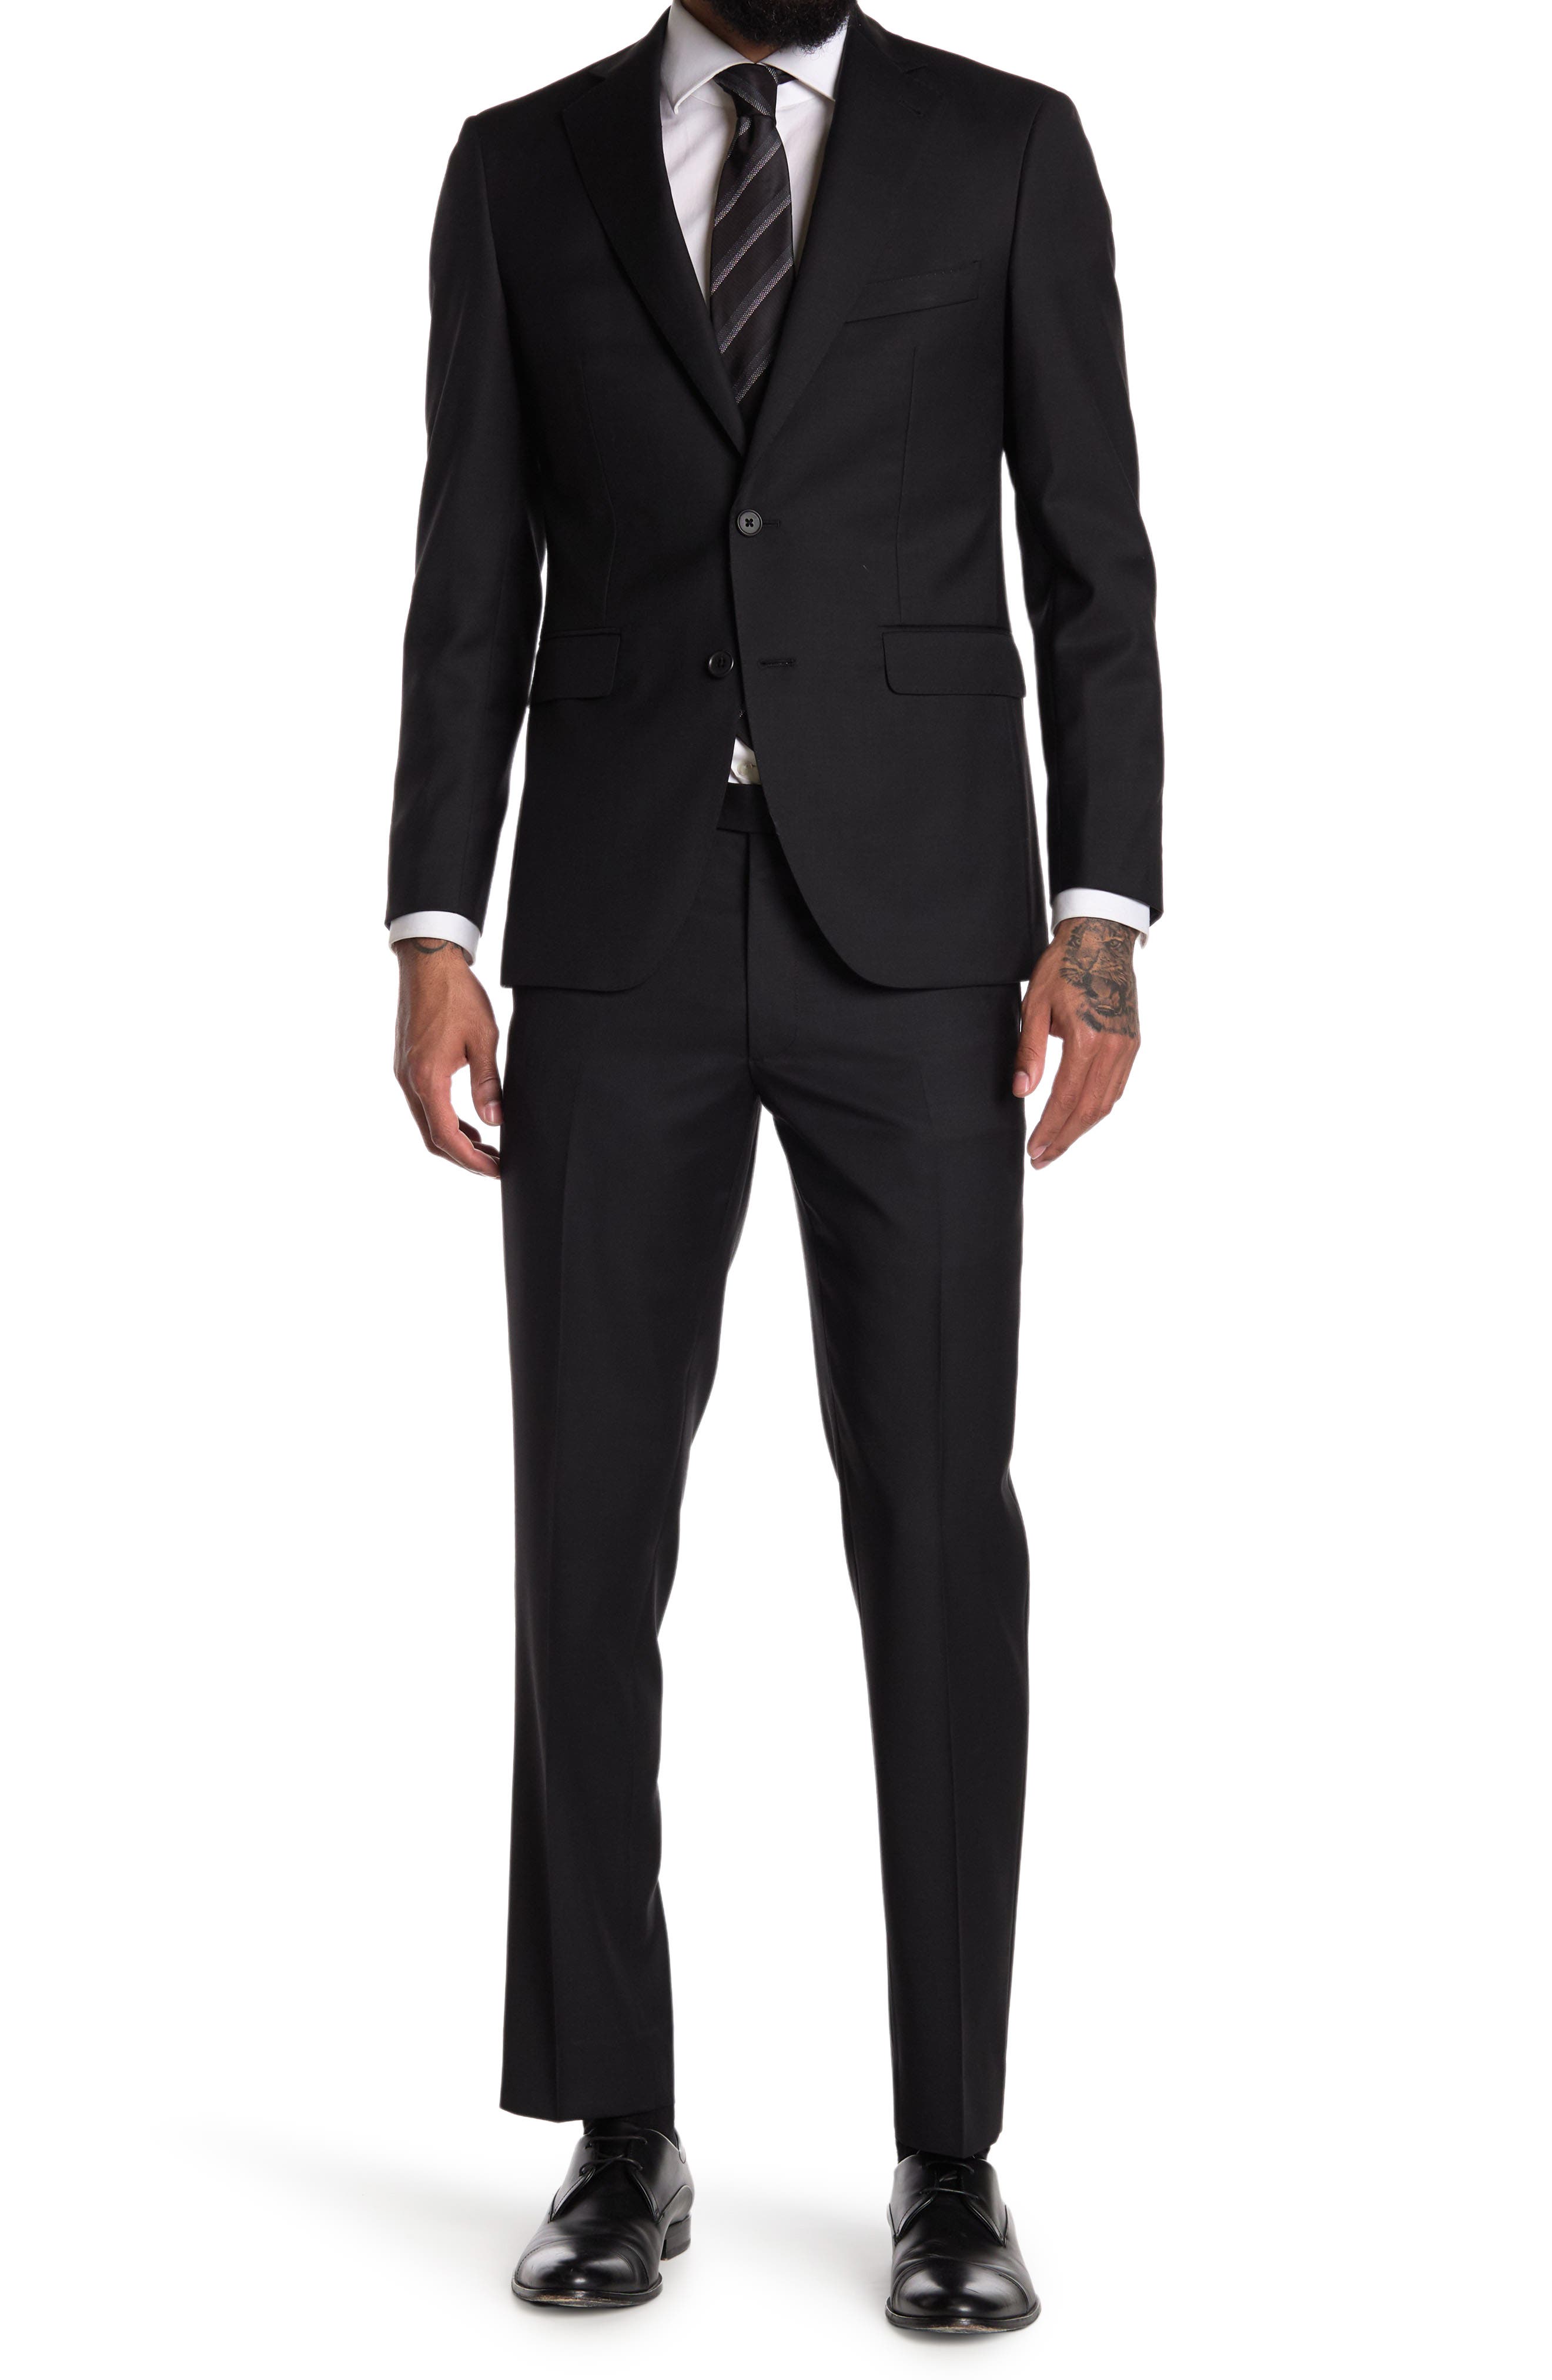 Alton Lane Notch Lapel Suit In Rs3003 Black | ModeSens